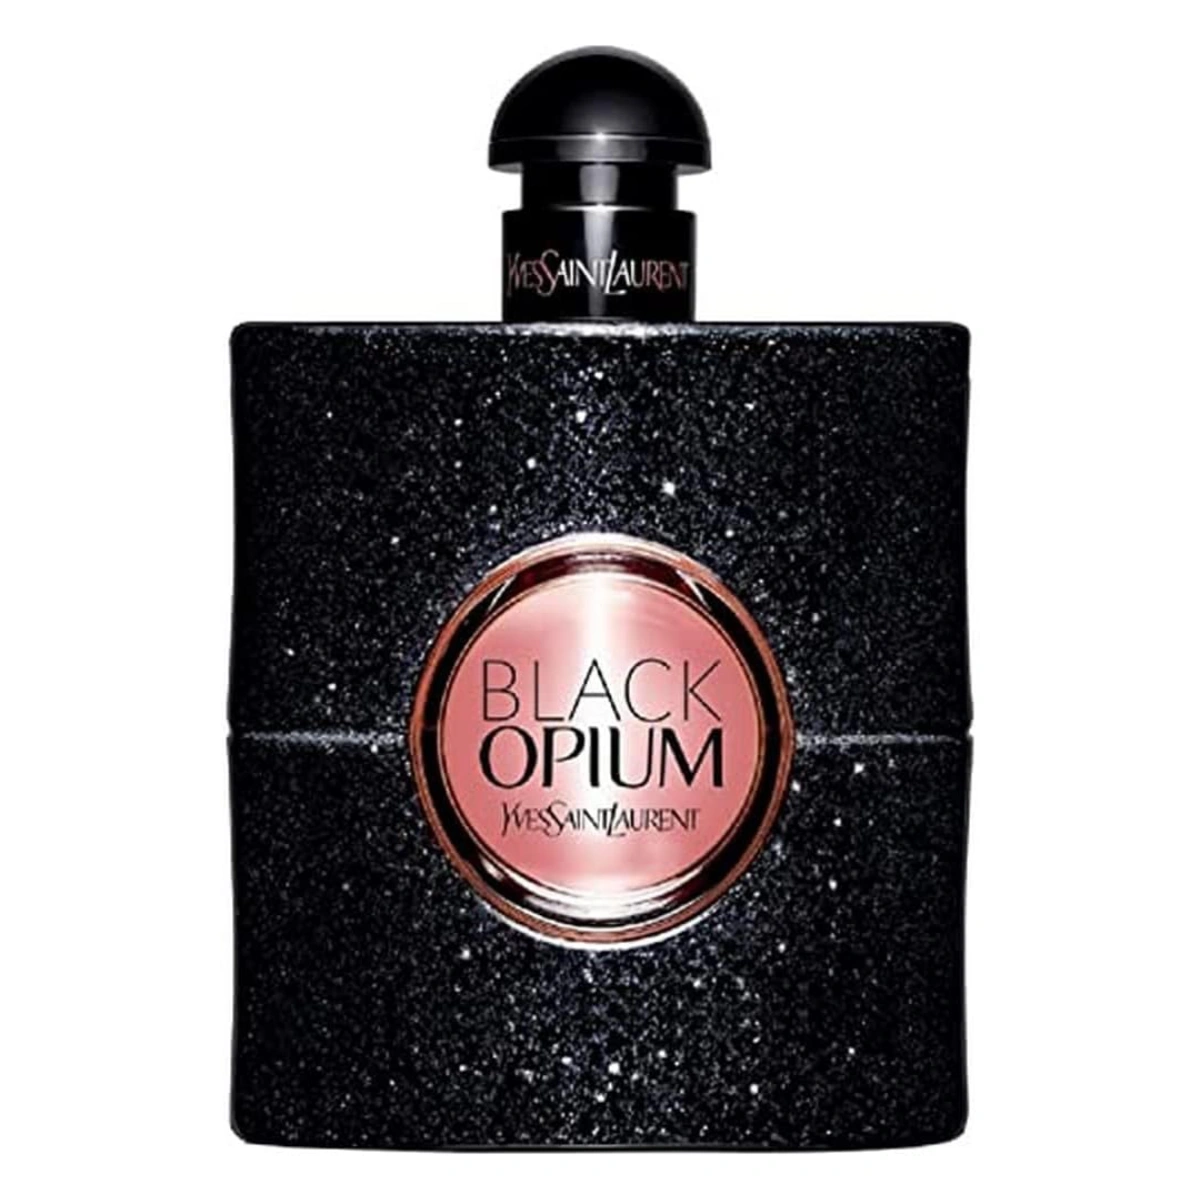 Yves Saint Laurent's Black Opium perfume bottle